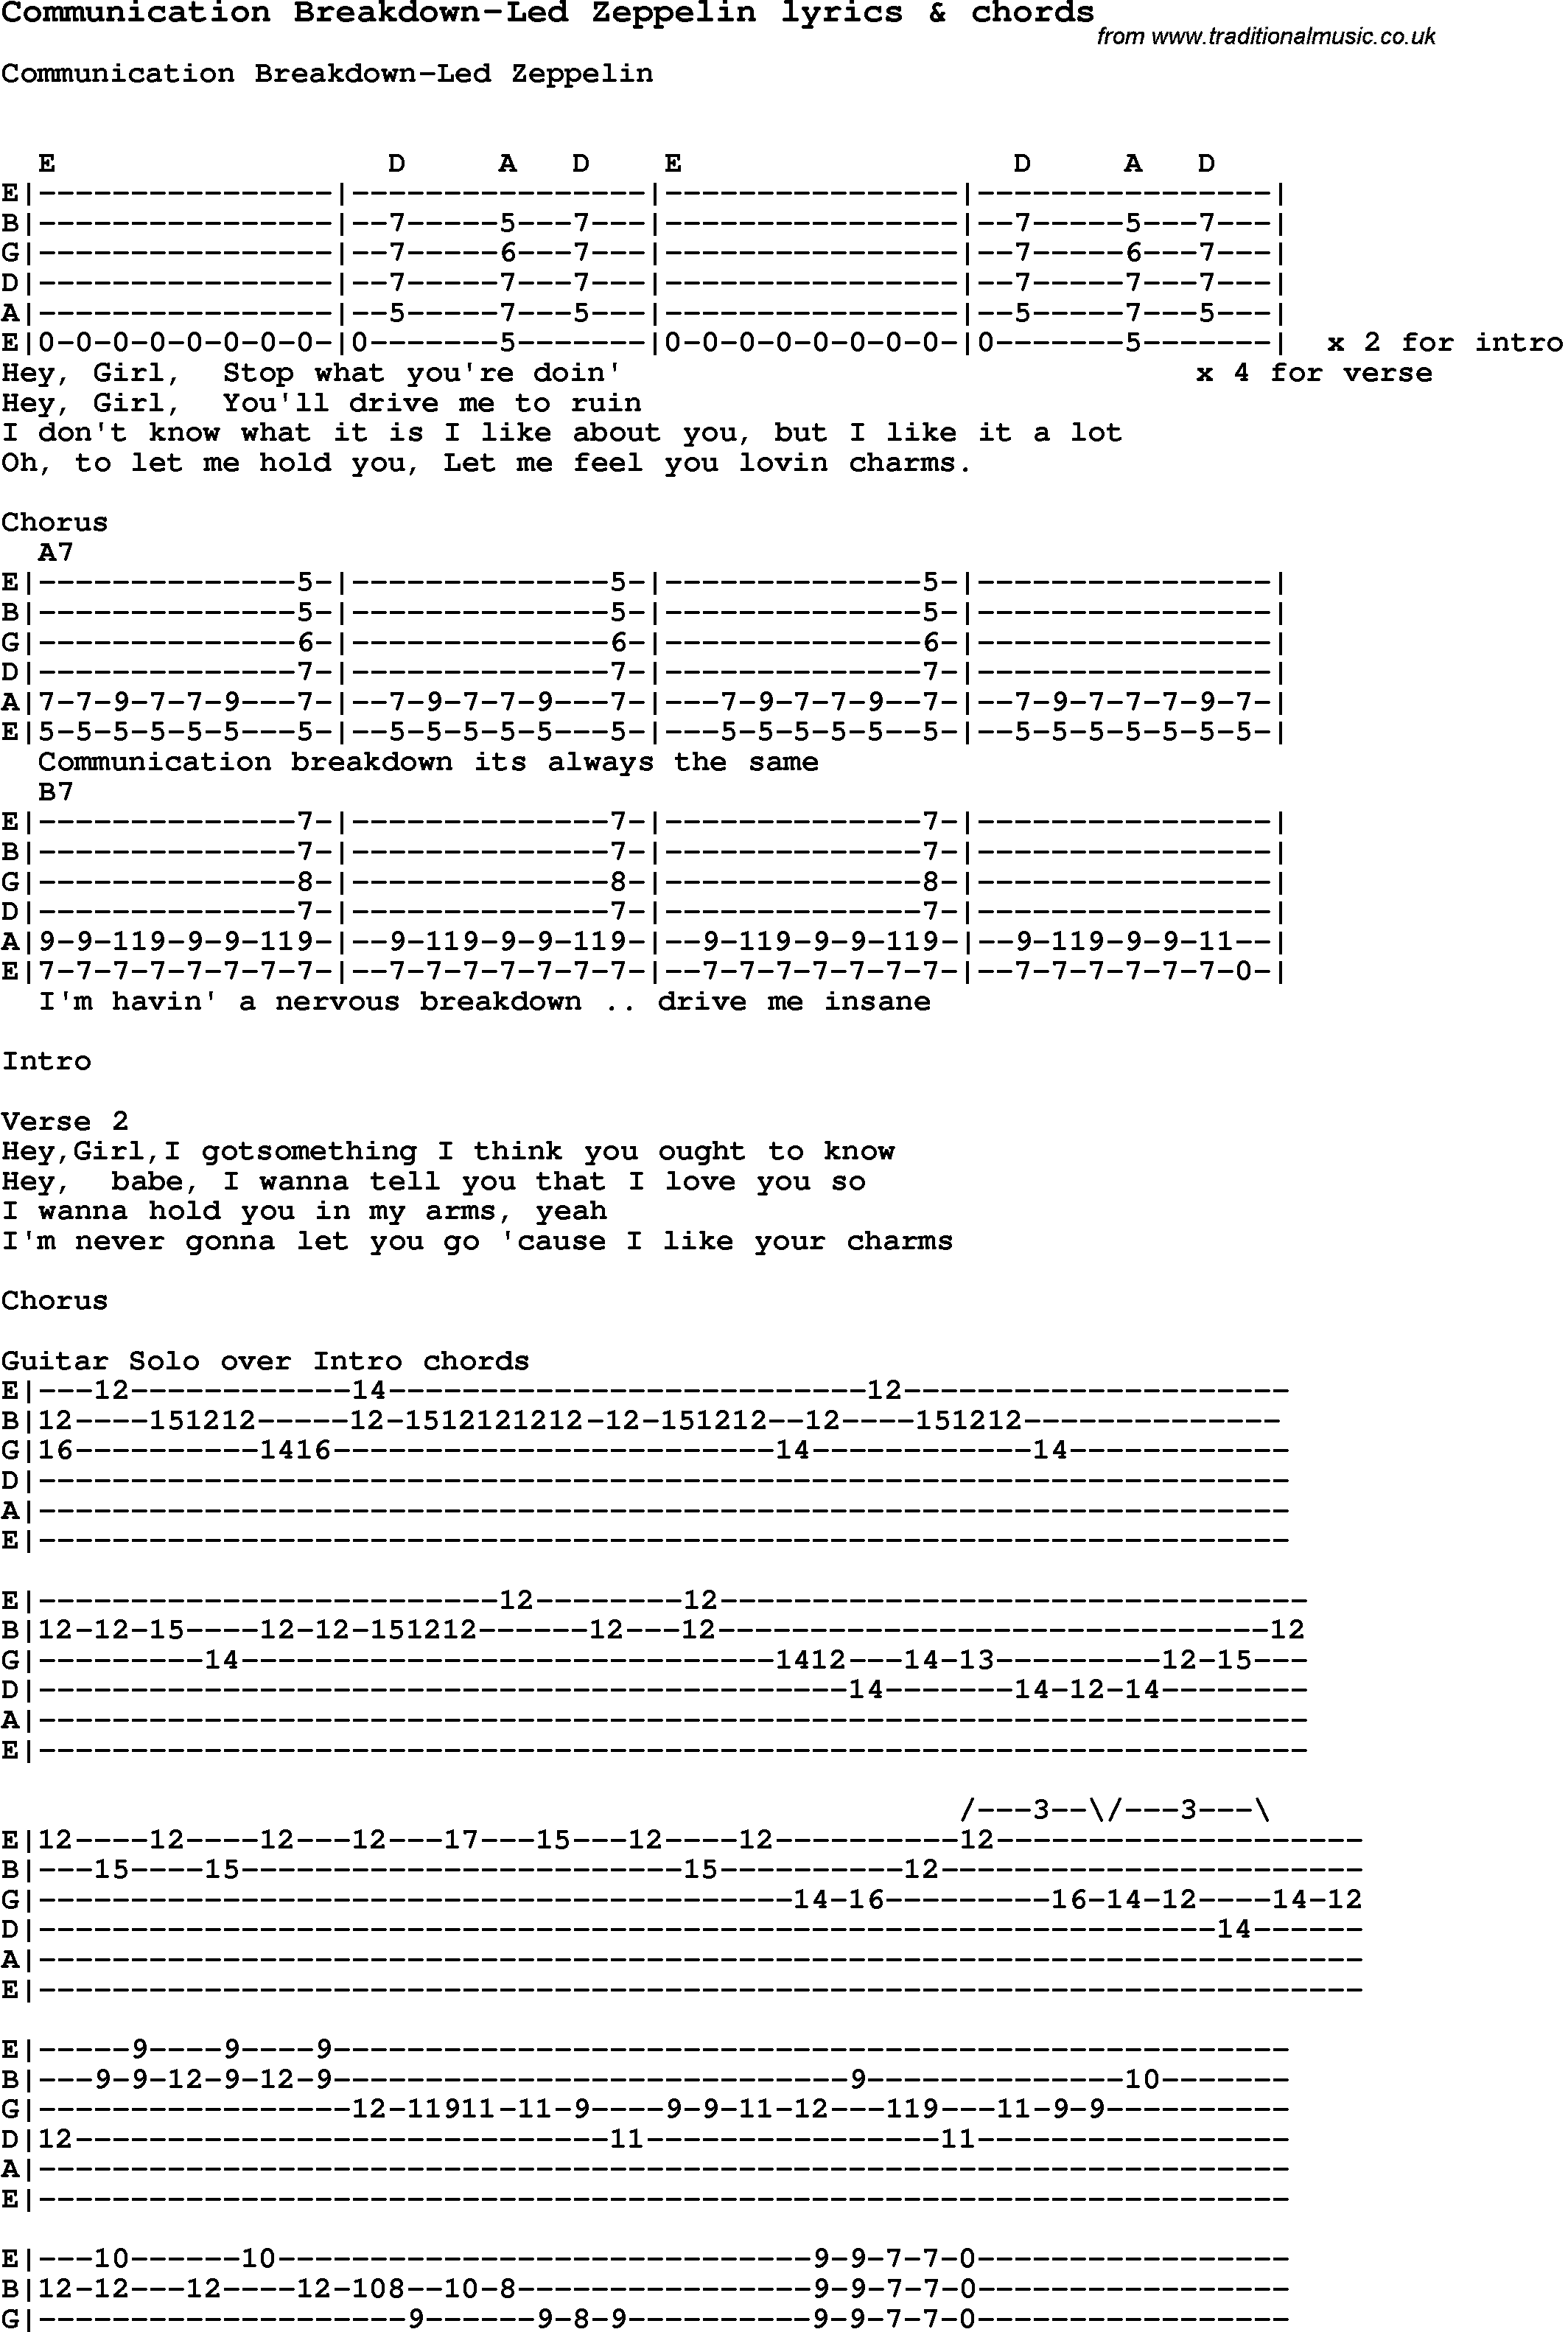 Love Song Lyrics for: Communication Breakdown-Led Zeppelin with chords for Ukulele, Guitar Banjo etc.